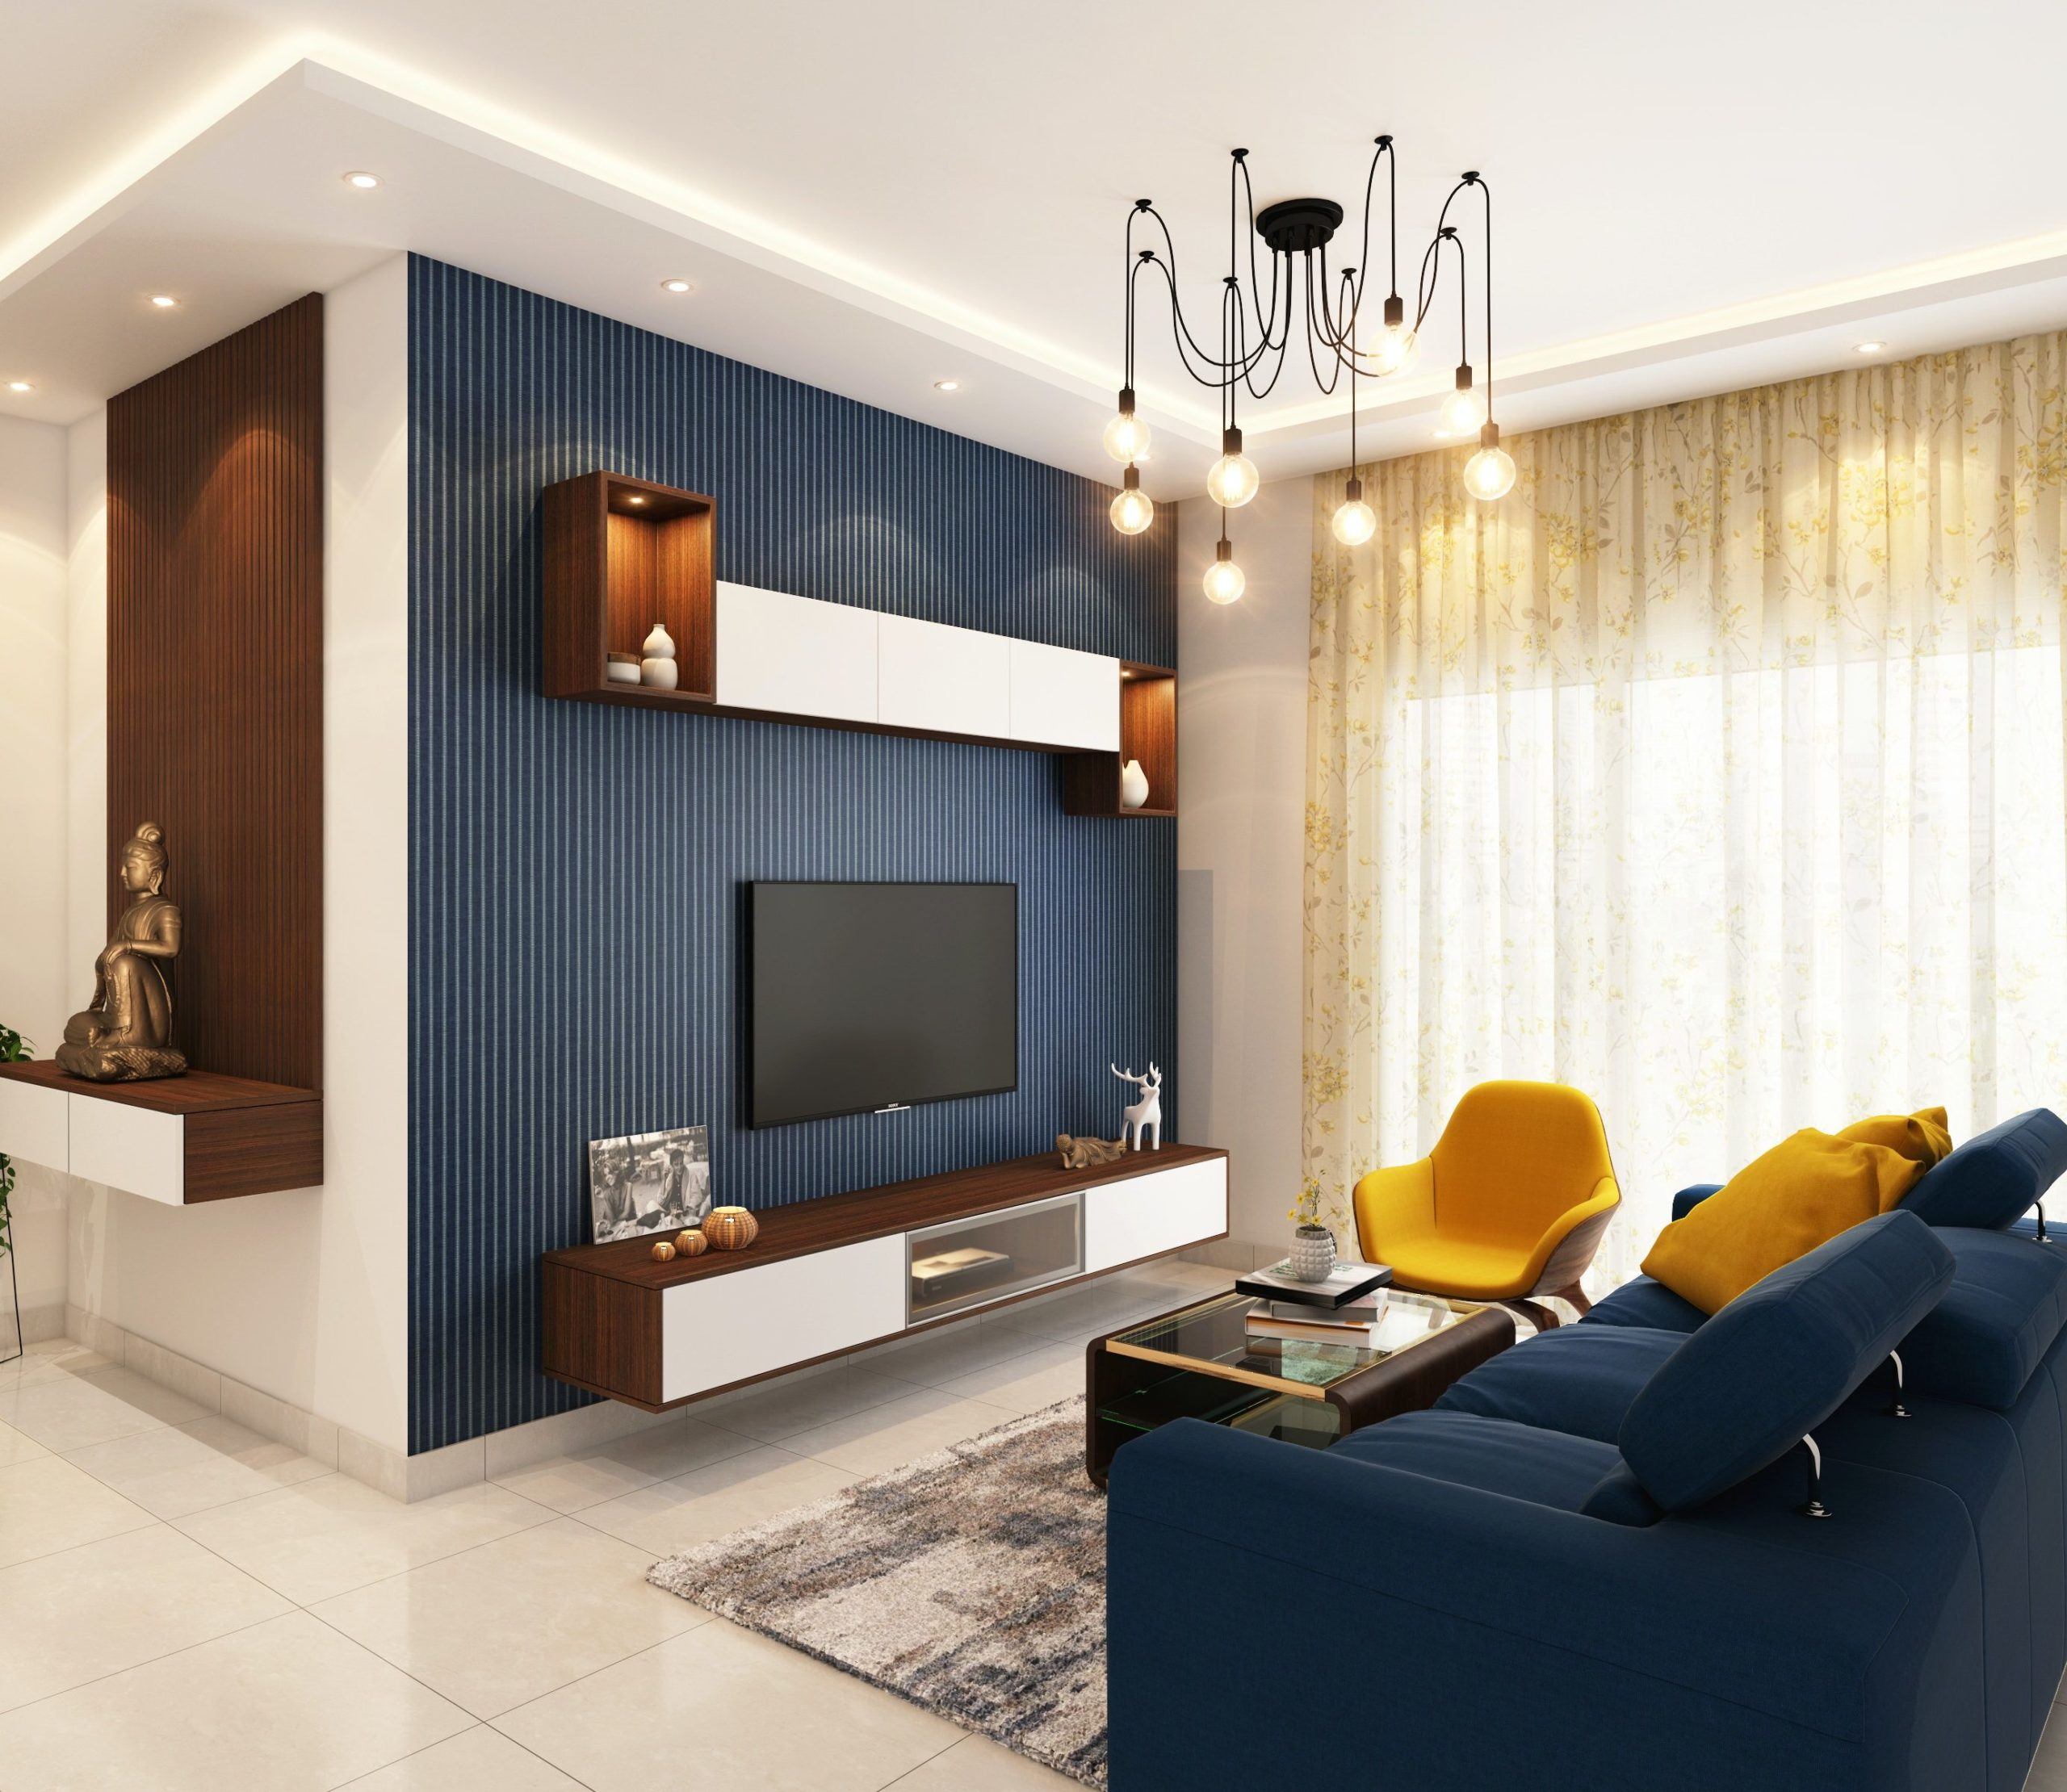 Cortina estampada em tom neutro pode dar um charme a mais em uma sala de estar moderna e com cores vibrantes. 